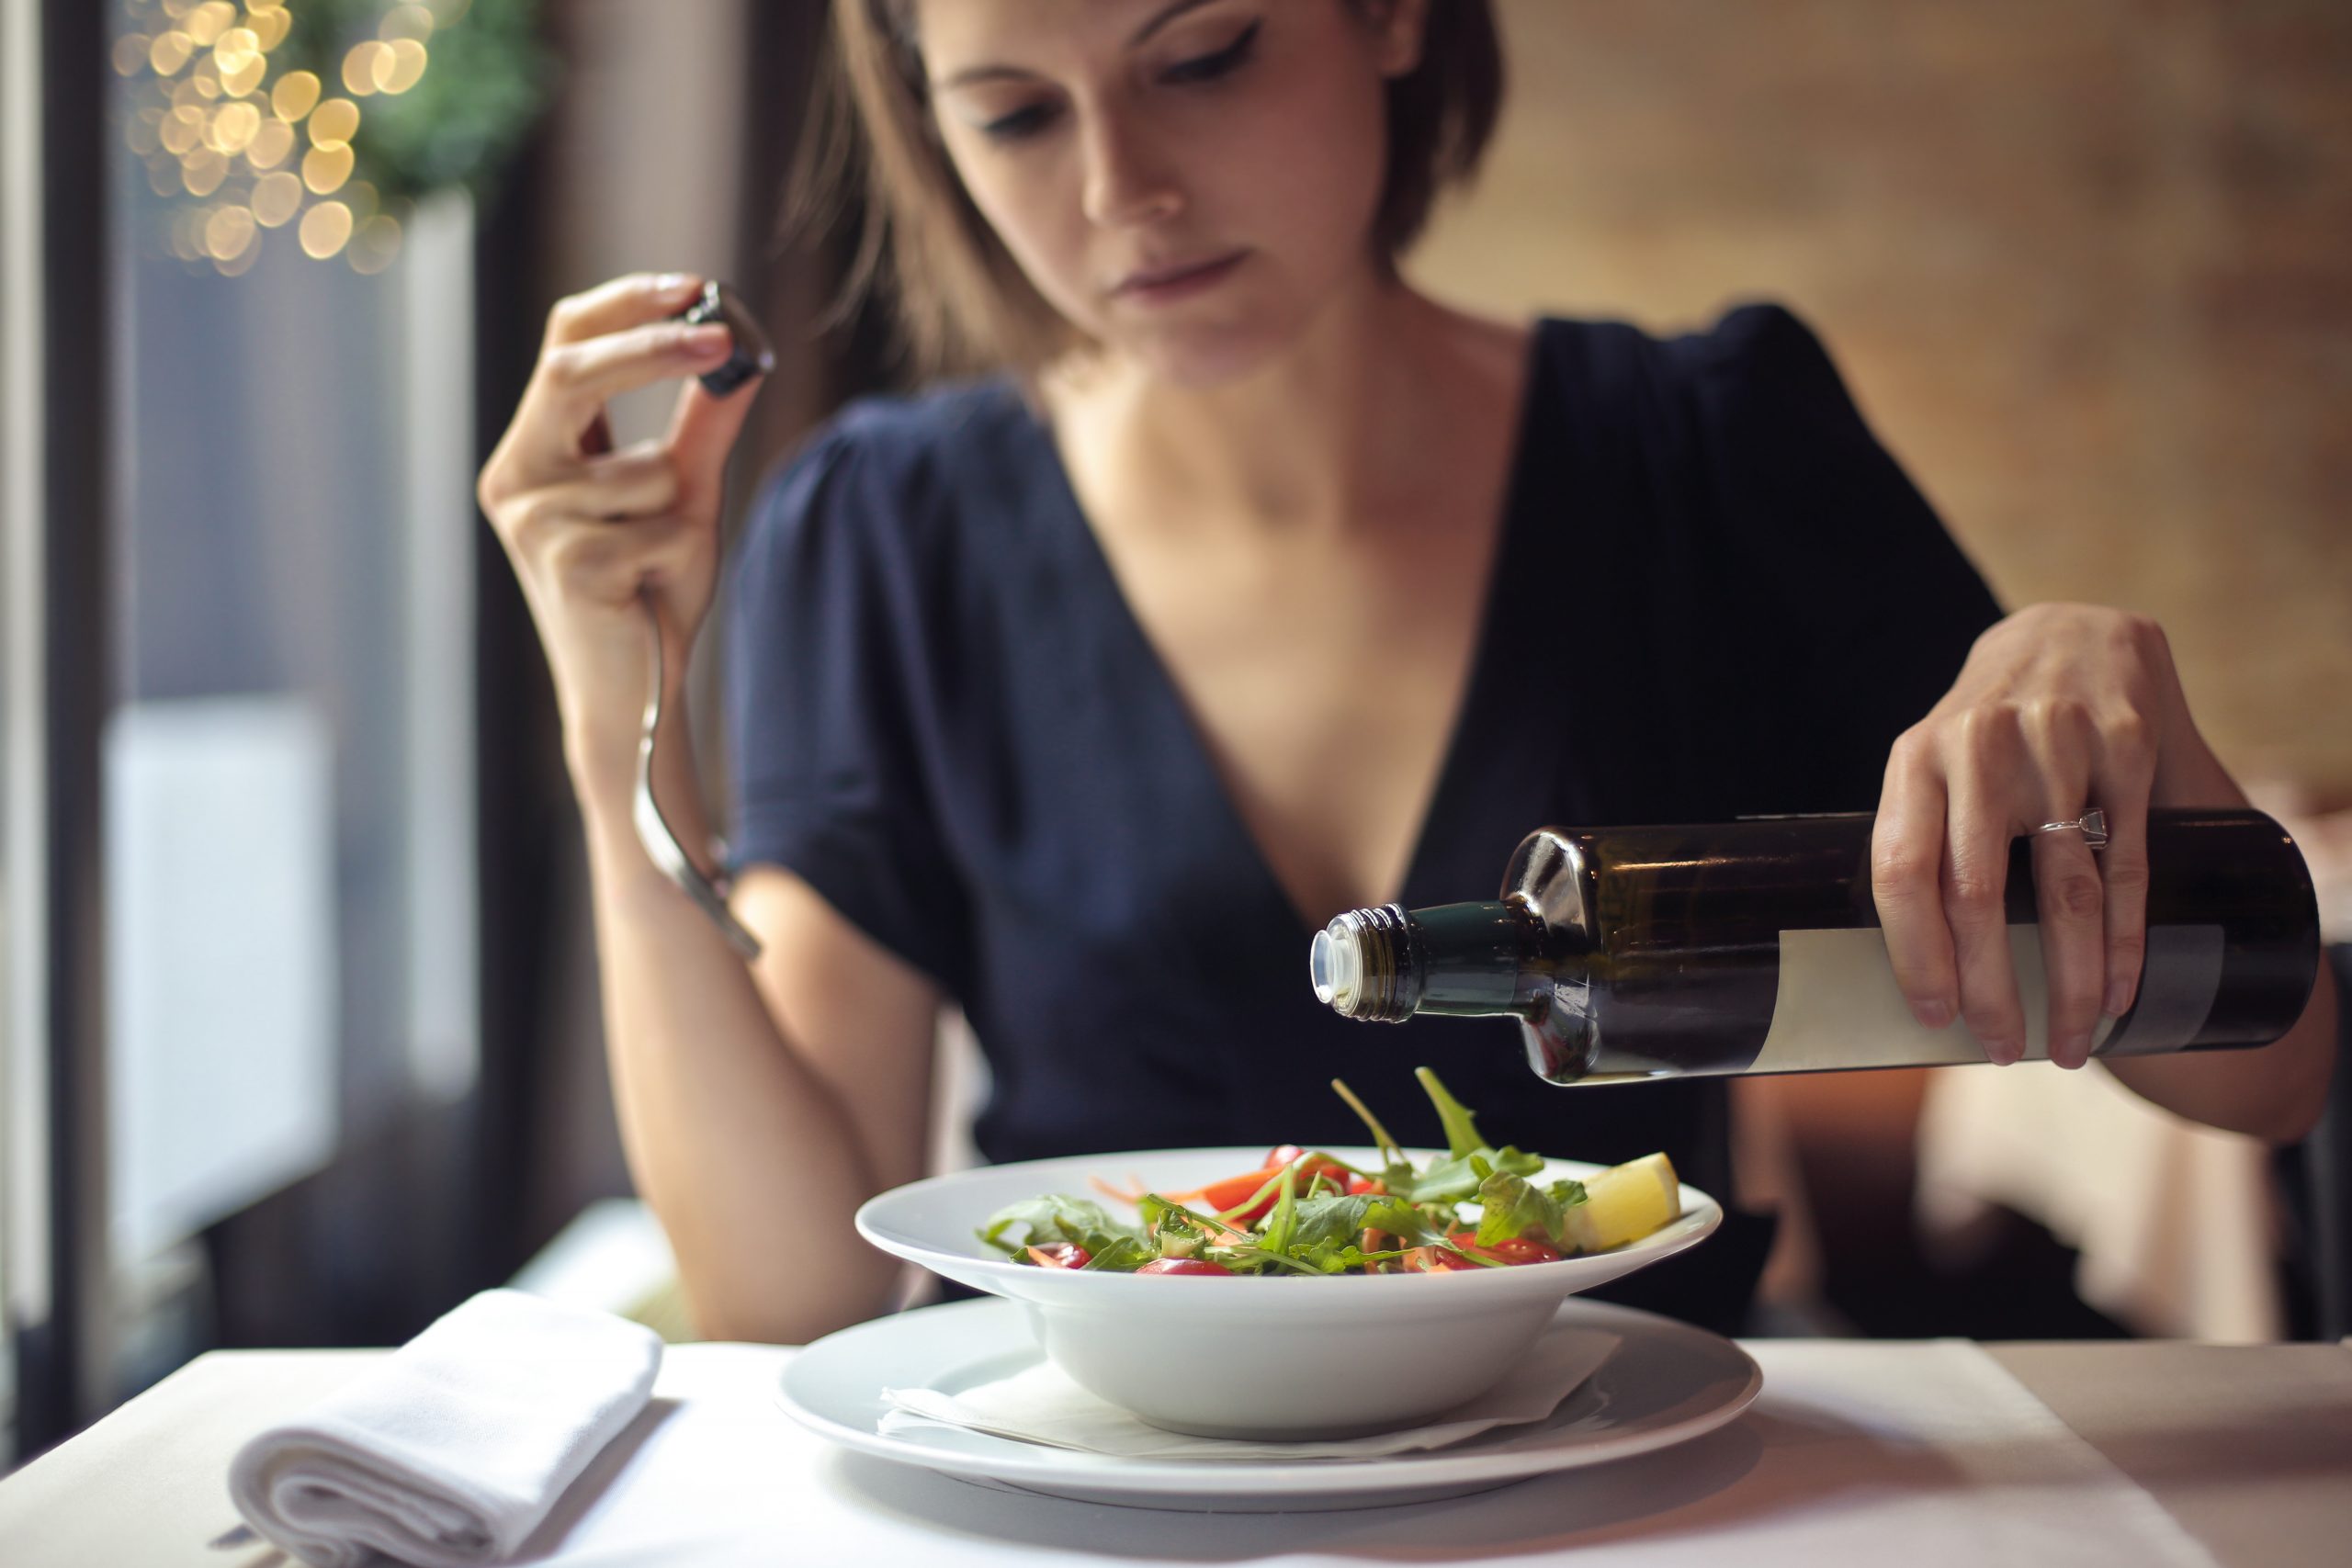 Woman Eating A Salad 2021 08 26 18 51 29 Utc